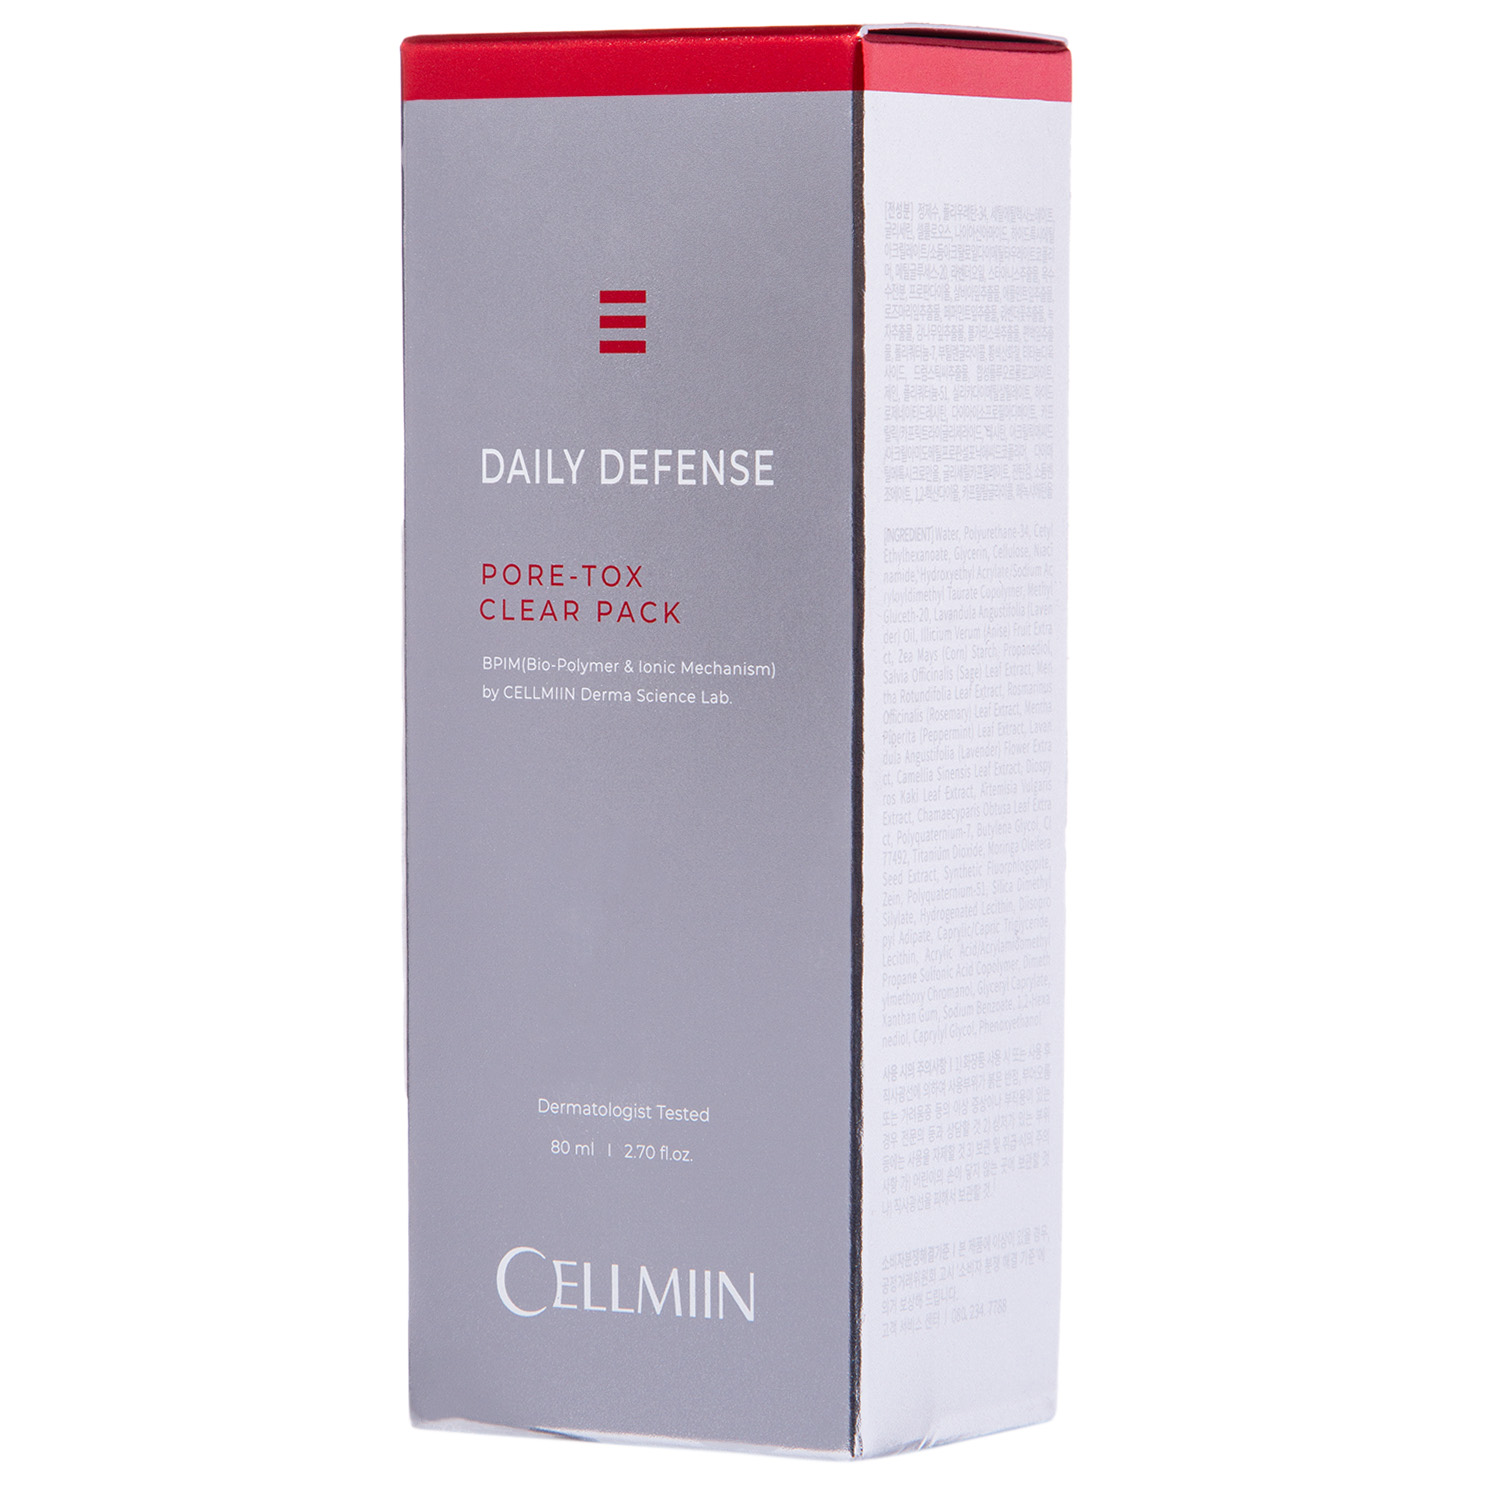 Cellmiin Маска для лица с эффектом детокса DAILY DEFENSE PORE-TOX, 80 мл (Cellmiin, )